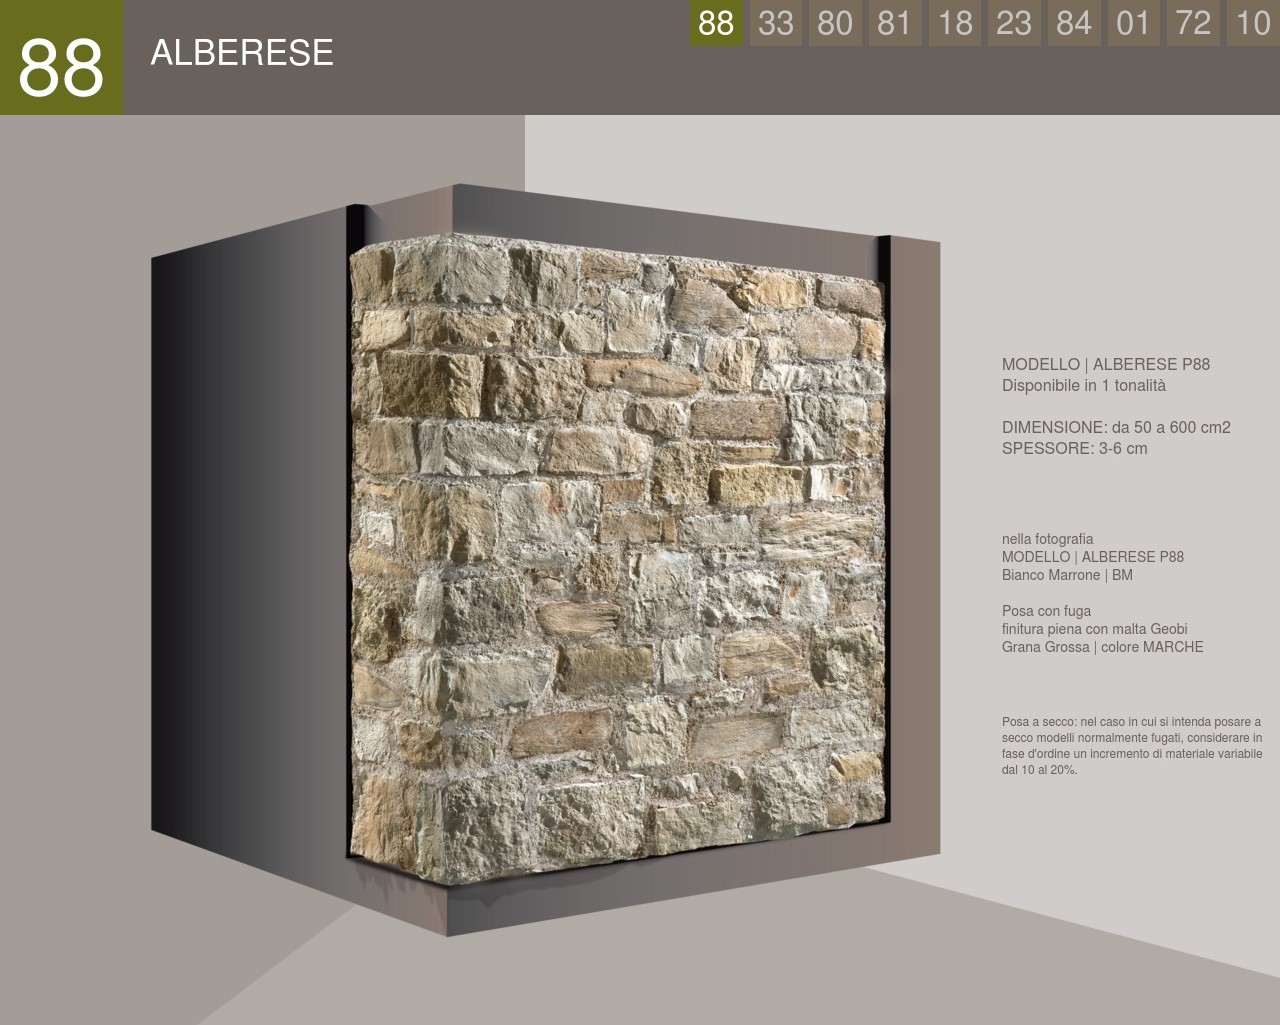 Albarese square profile stone cladding